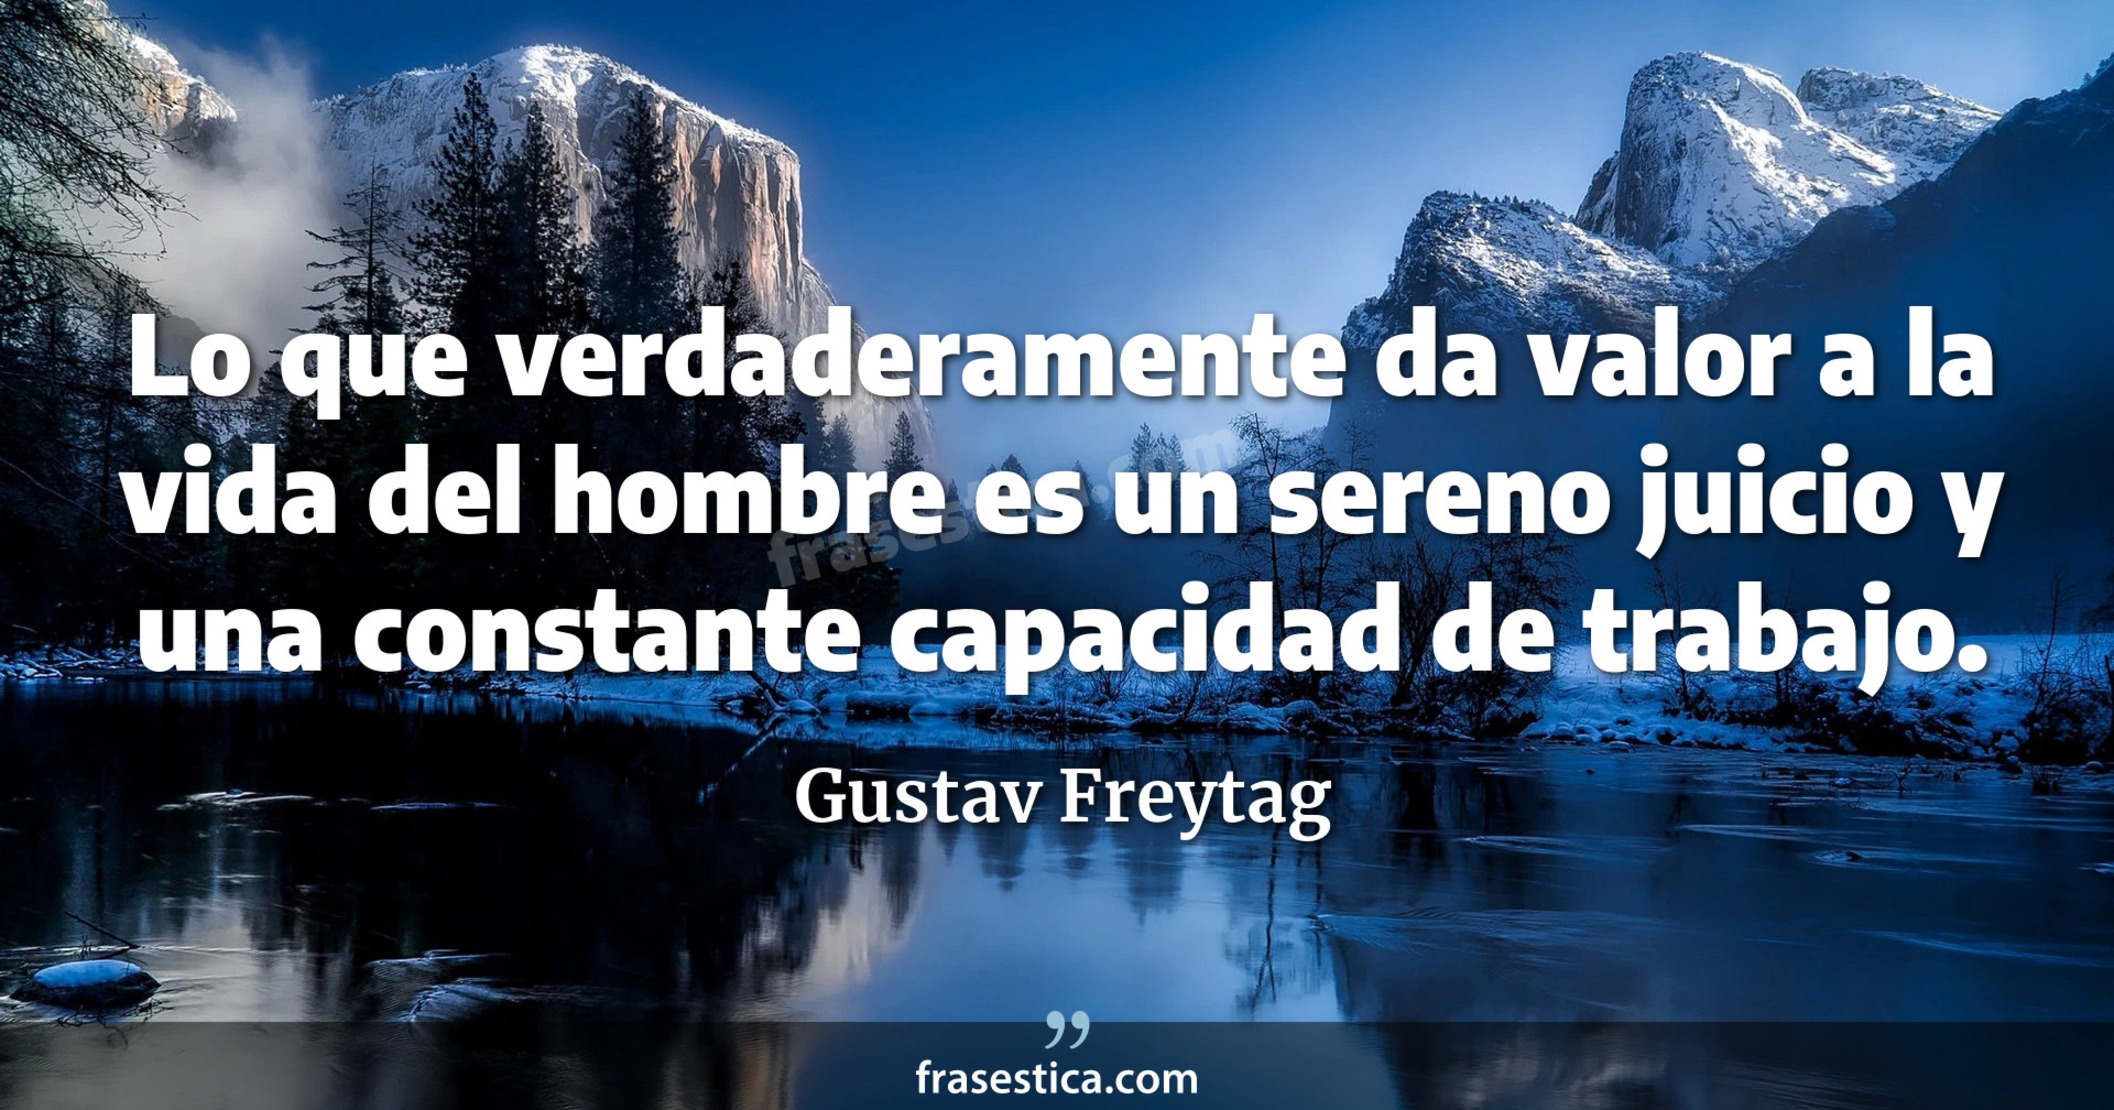 Lo que verdaderamente da valor a la vida del hombre es un sereno juicio y una constante capacidad de trabajo. - Gustav Freytag